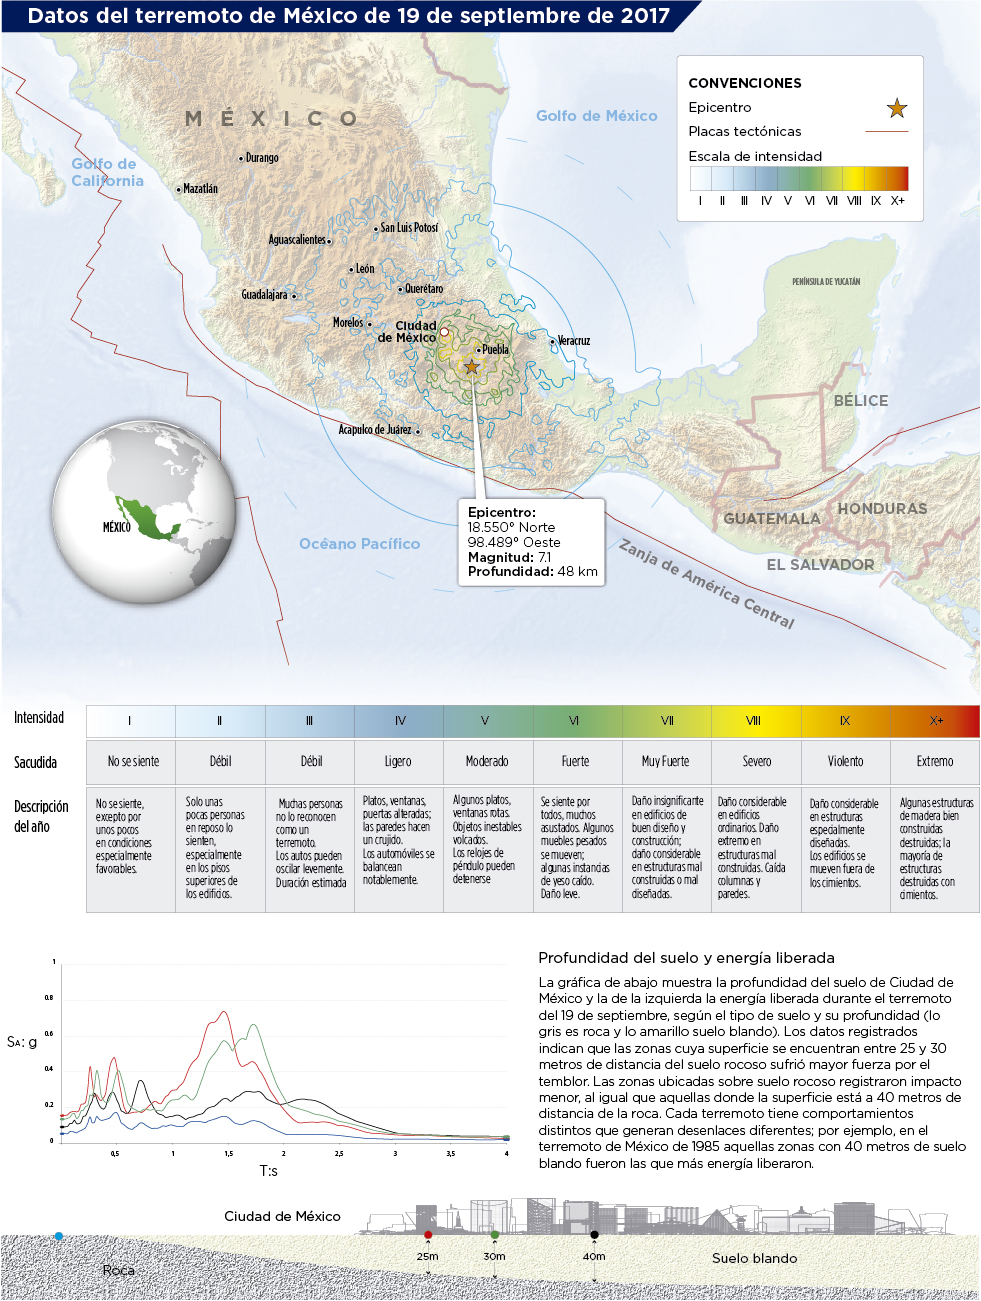 Datos del terremoto de México del 19 de septiembre de 2017